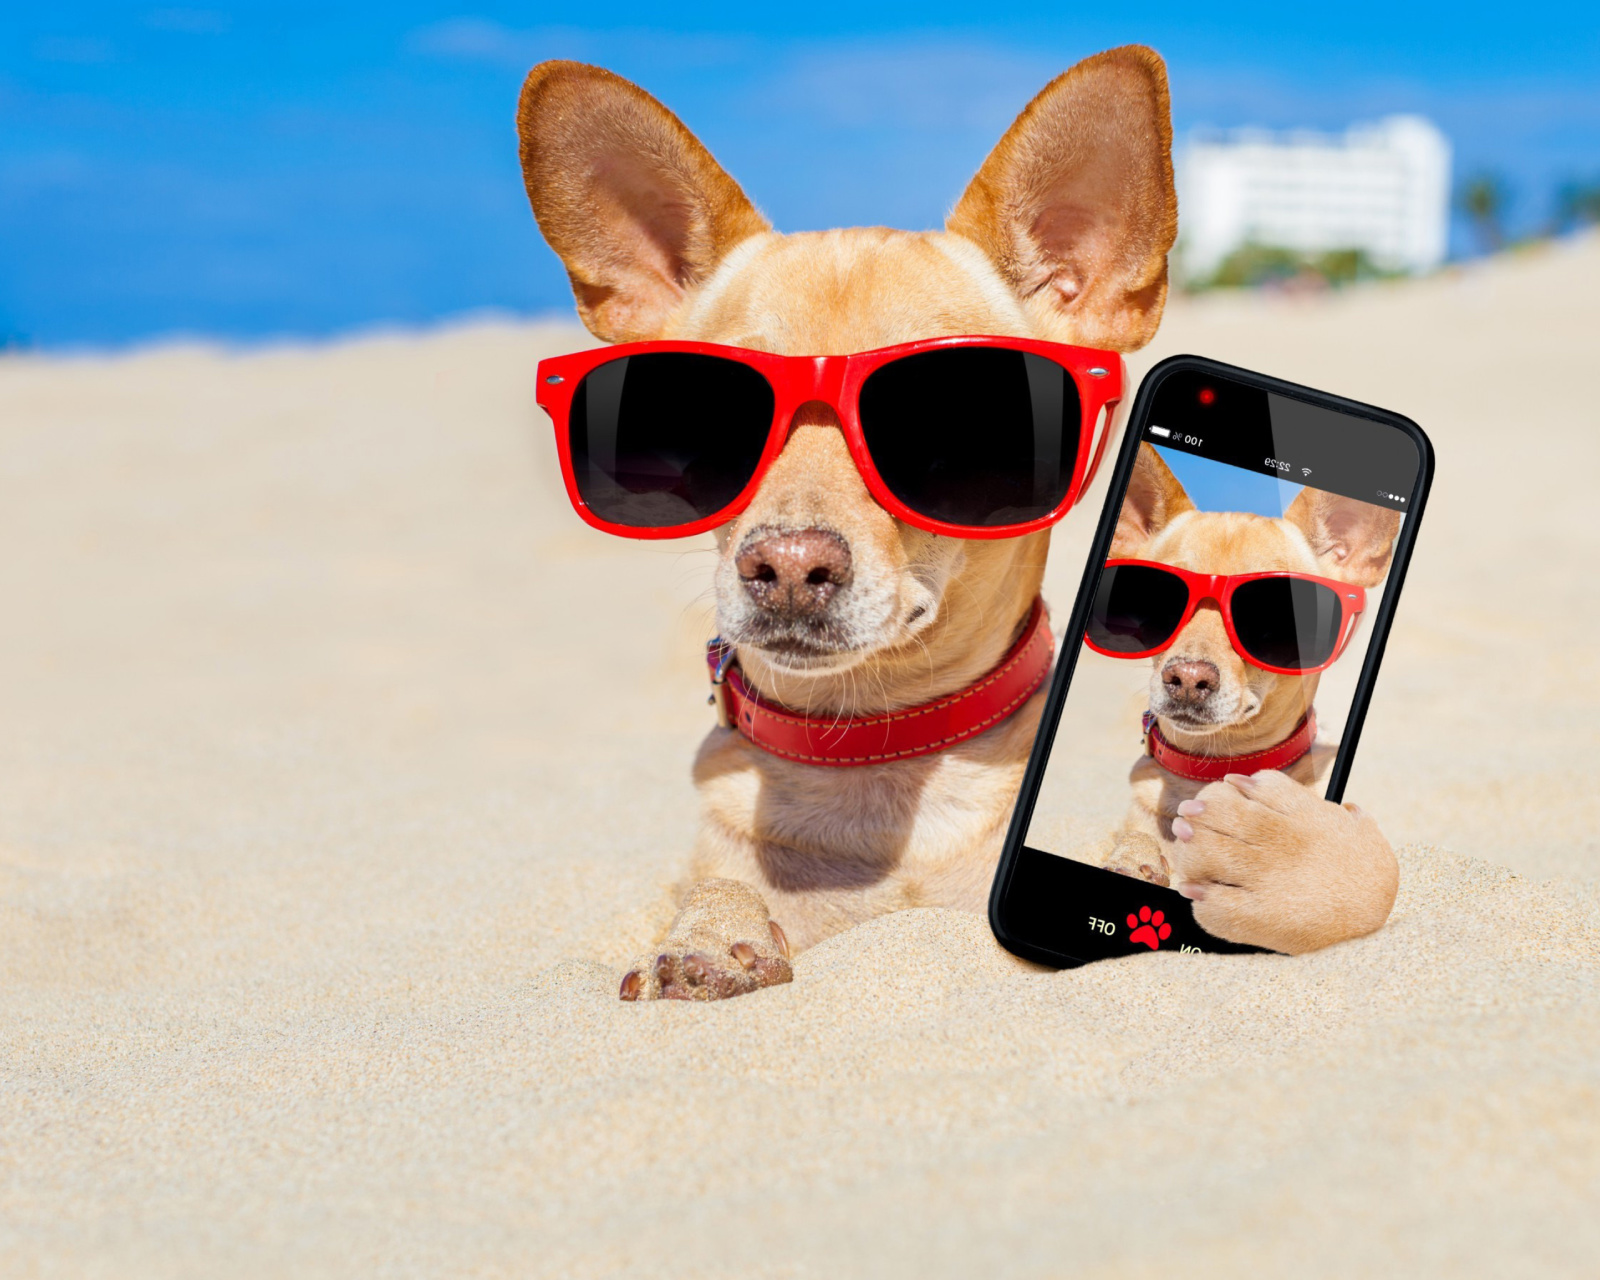 Обои Chihuahua with mobile phone 1600x1280